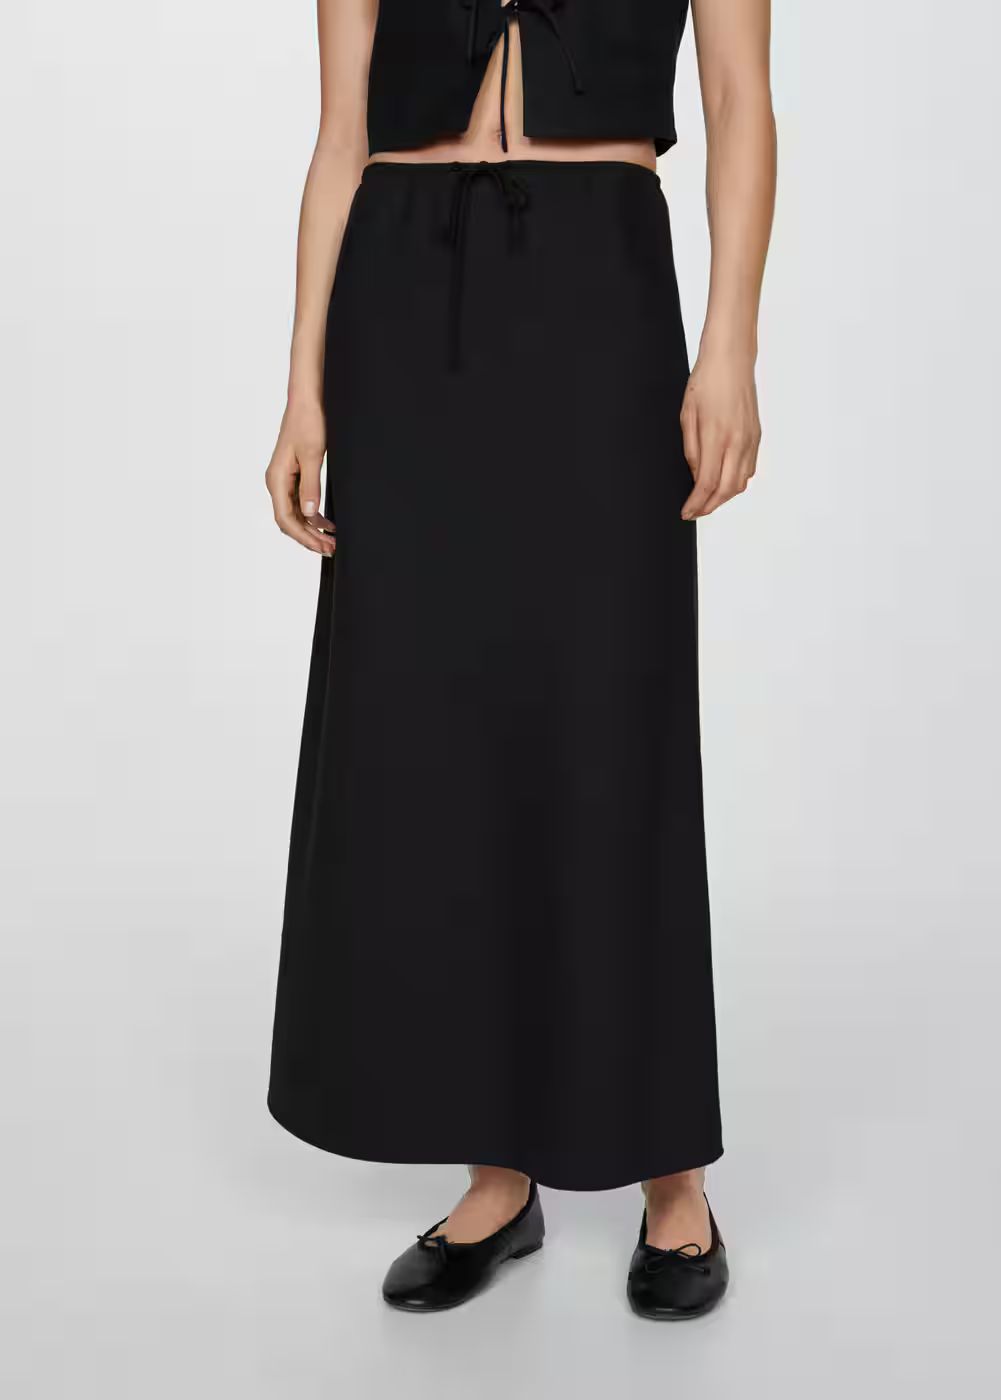 Long skirt with adjustable bow -  Women | Mango United Kingdom | MANGO (UK)